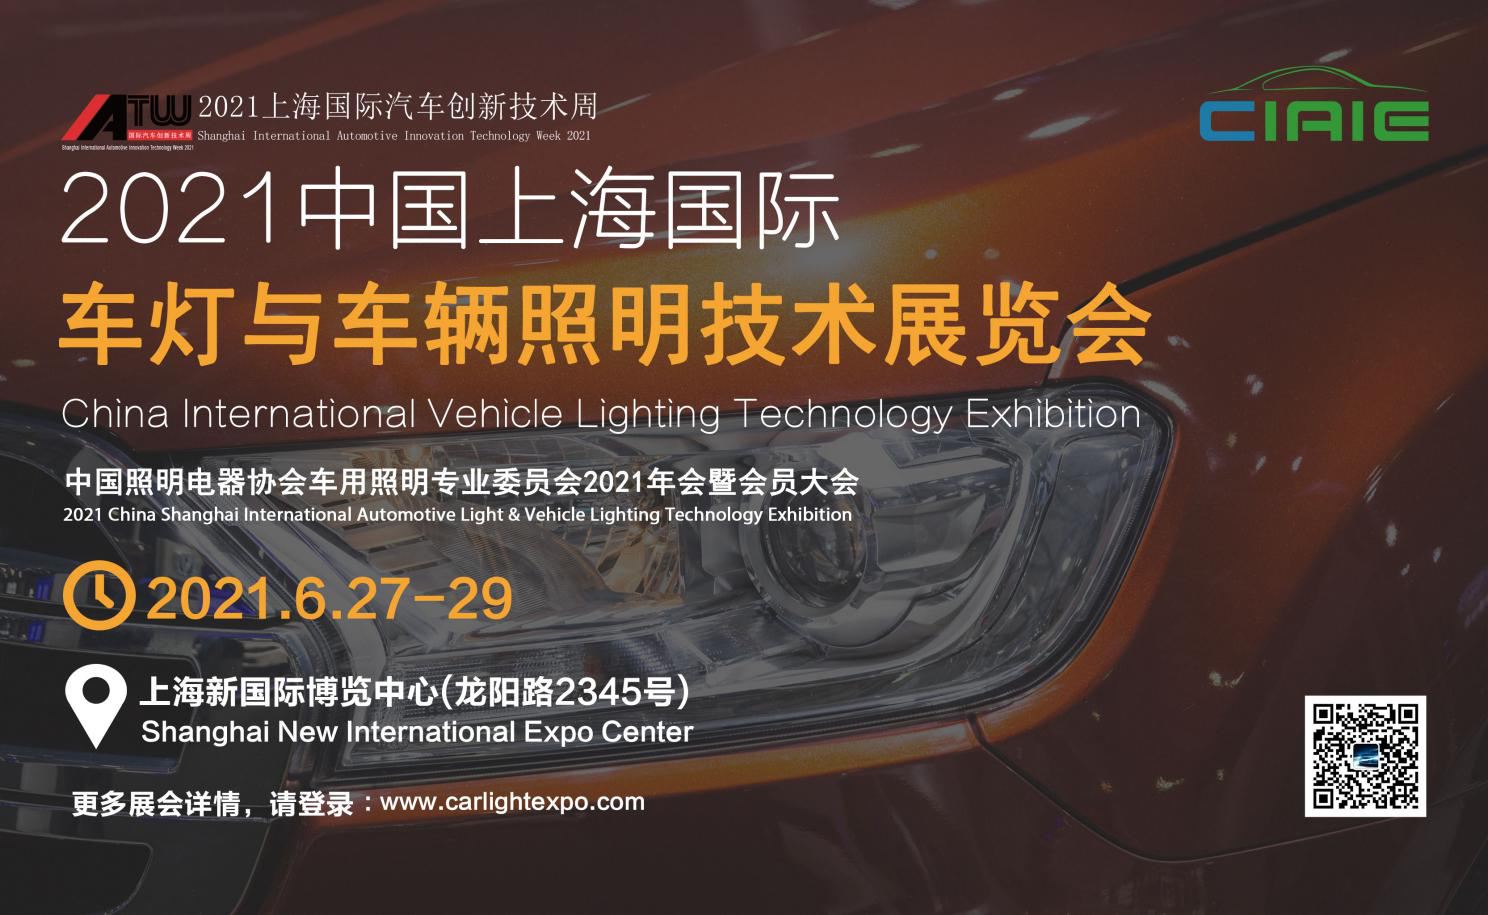 CIAIE 2021第十一届中国上海国际际车灯与车辆照明技术展览会，正式定档2021年6月